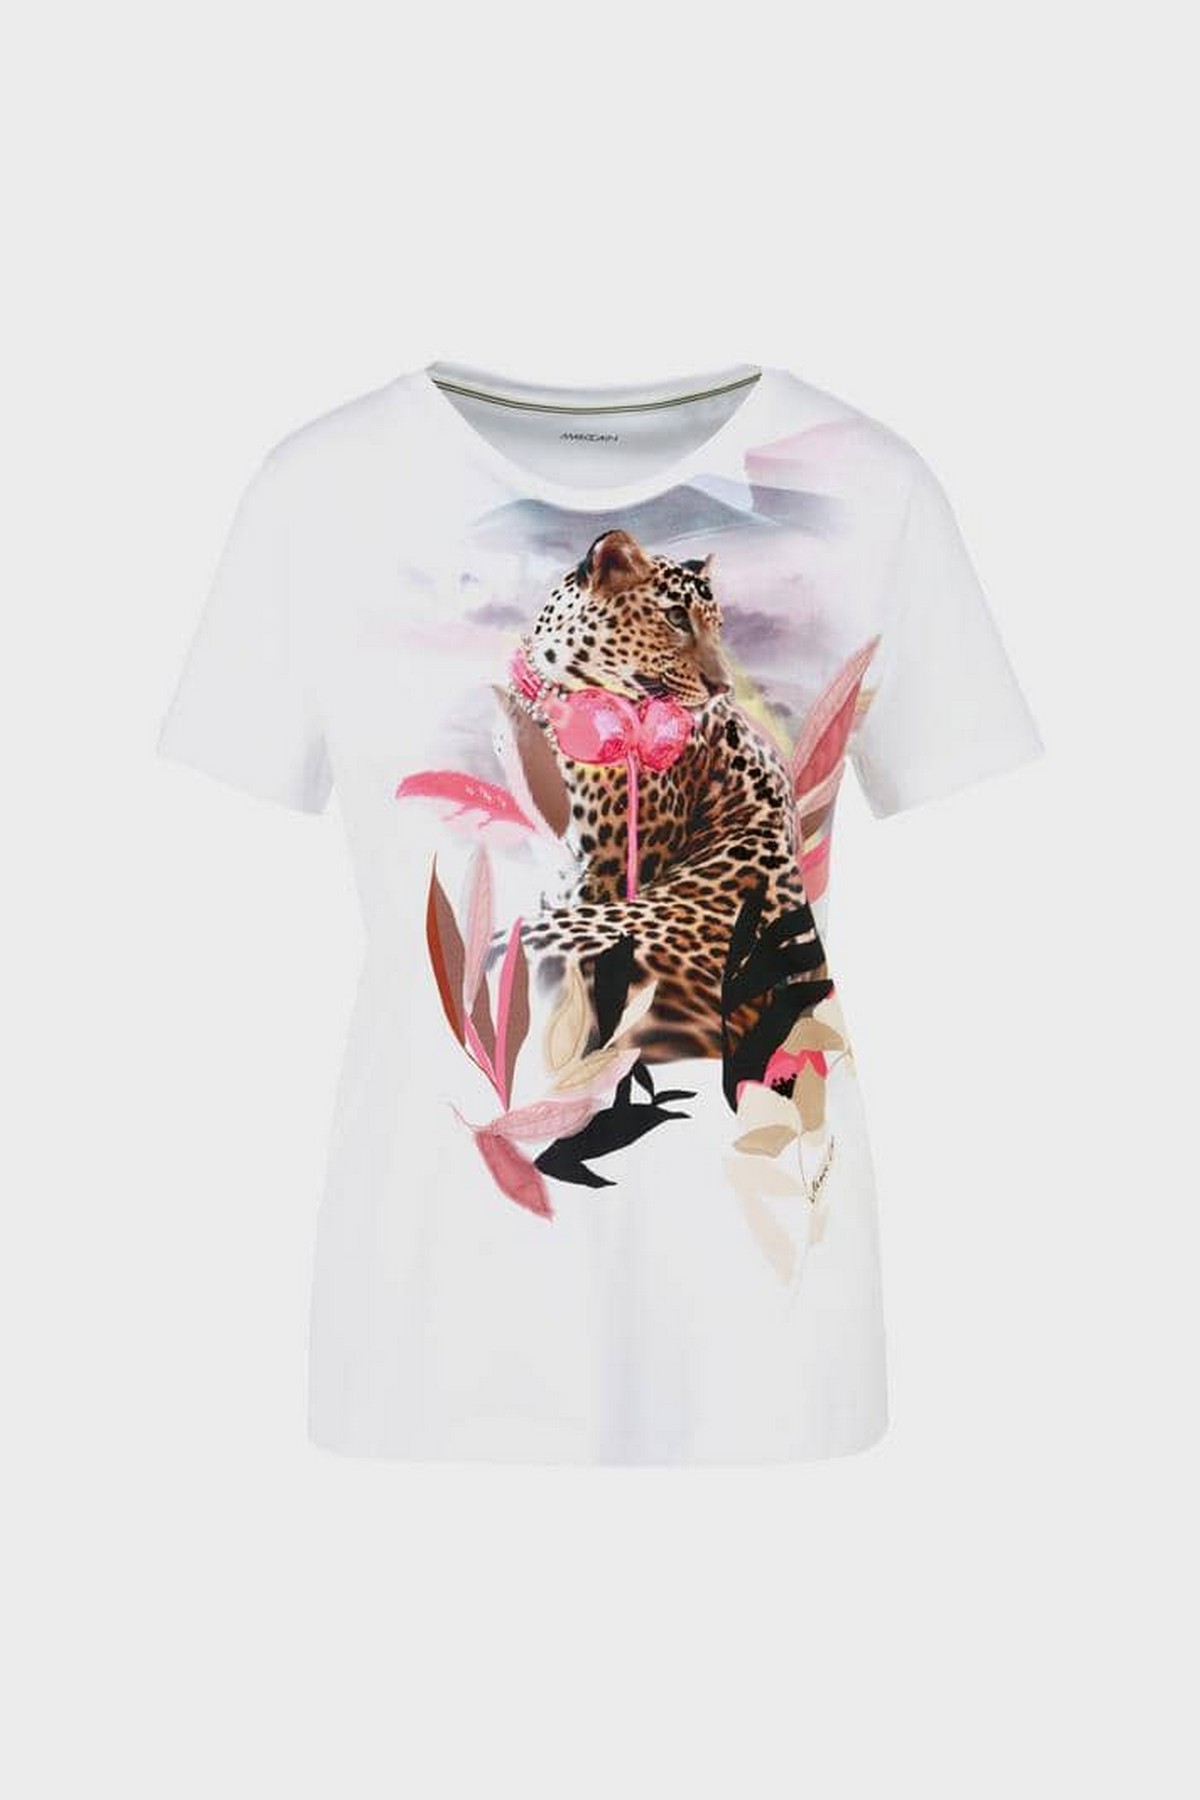 T-shirt luipaard print in de kleur wit print van het merk Marc Cain